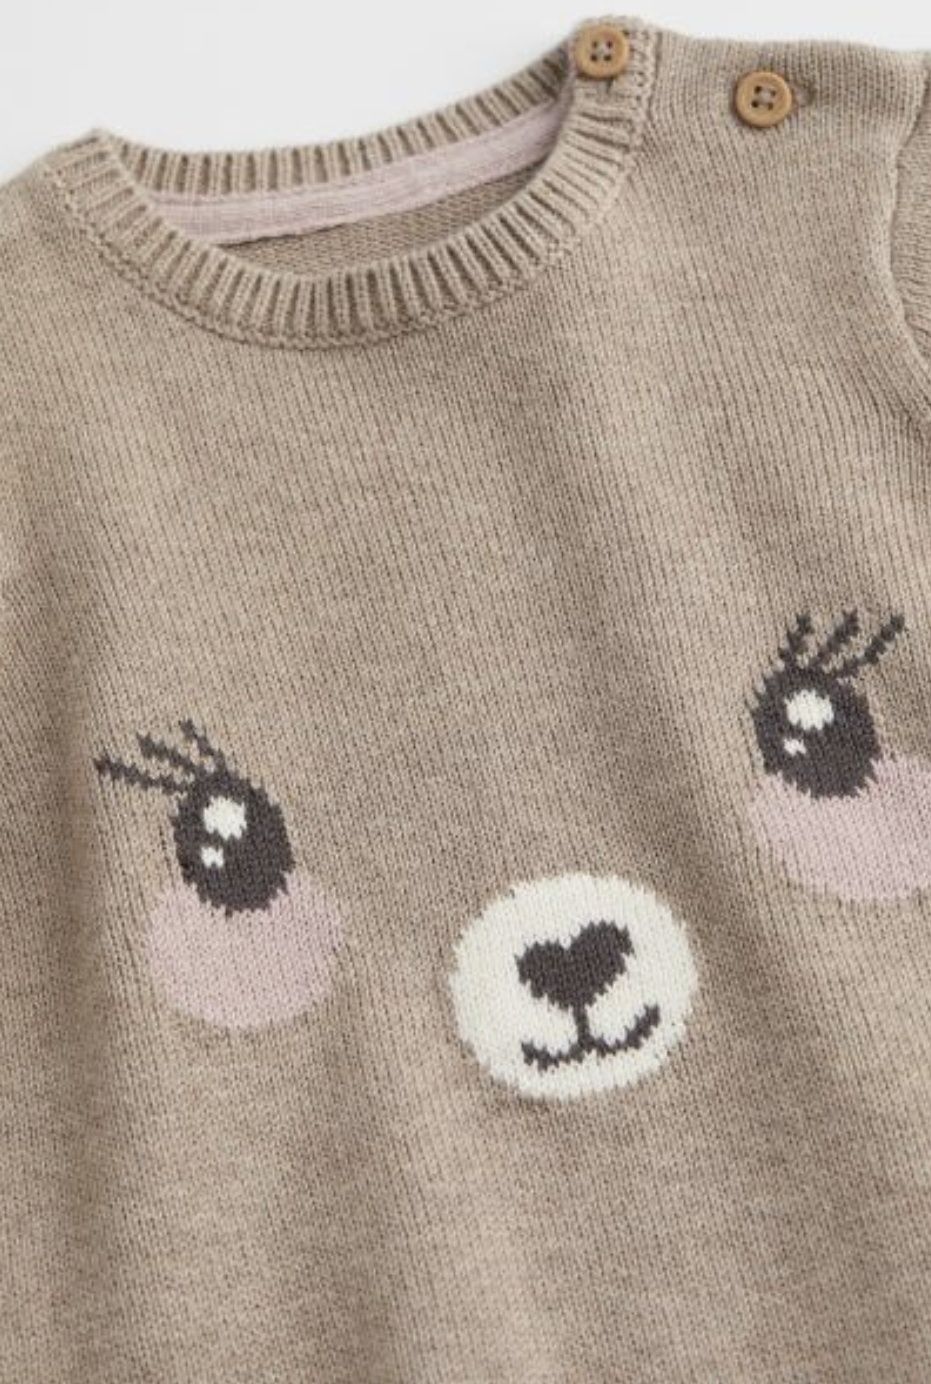 Sweterek dla dziewczynki H&M roz. 86